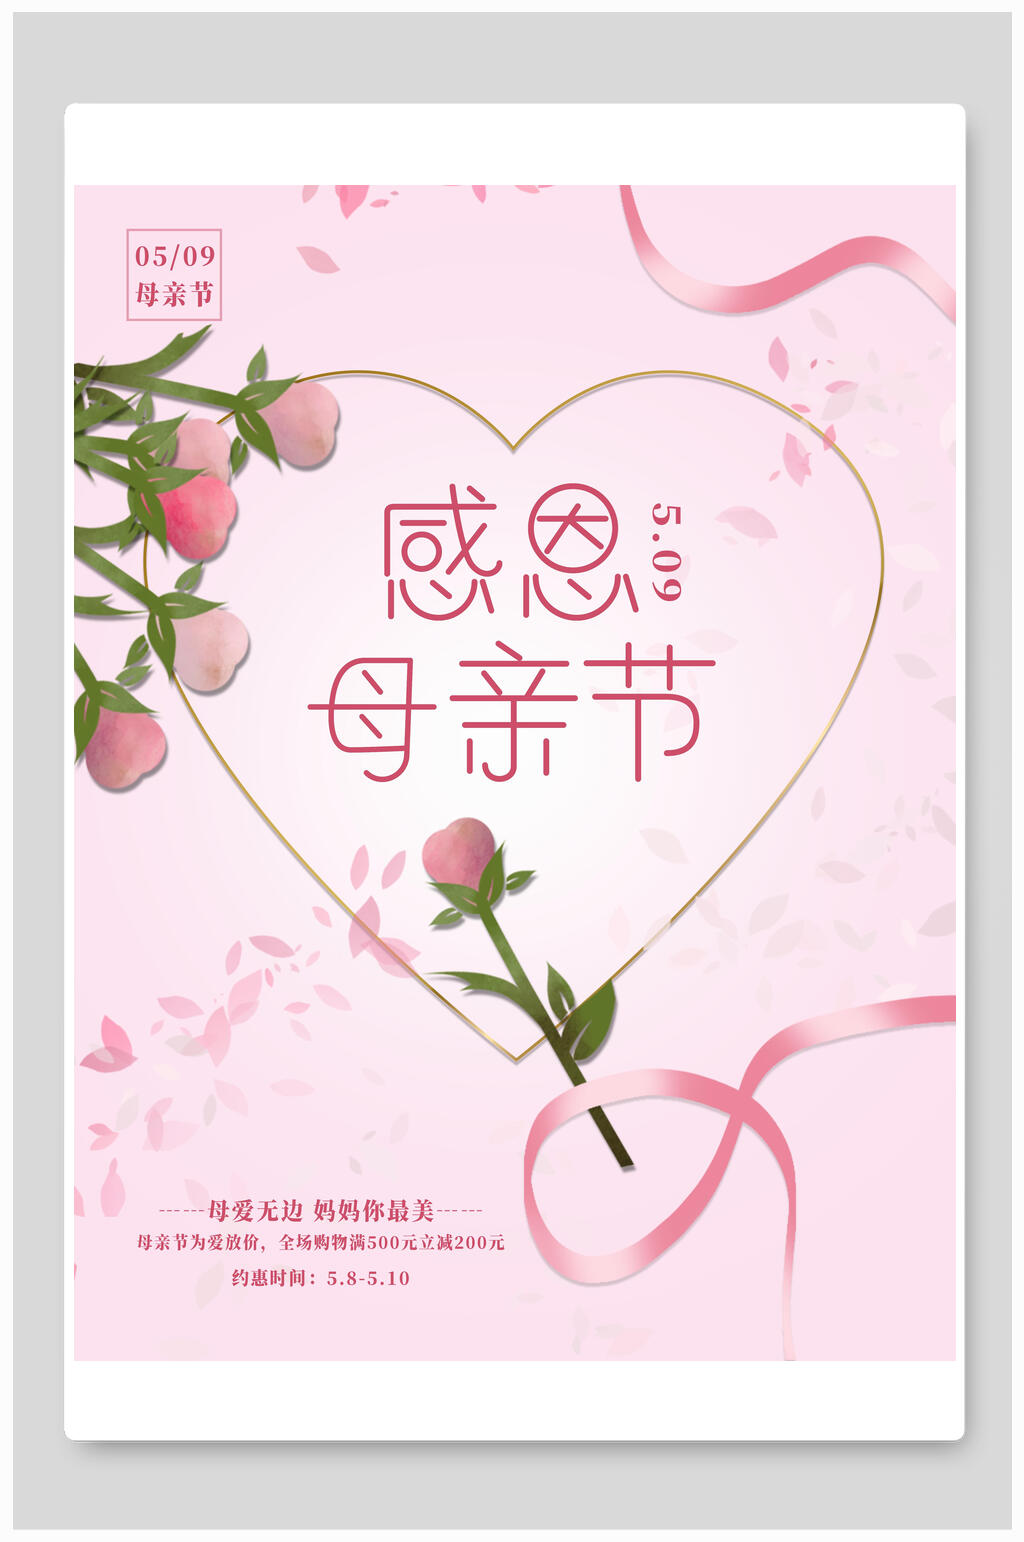 简约粉色母亲节传统节日宣传海报